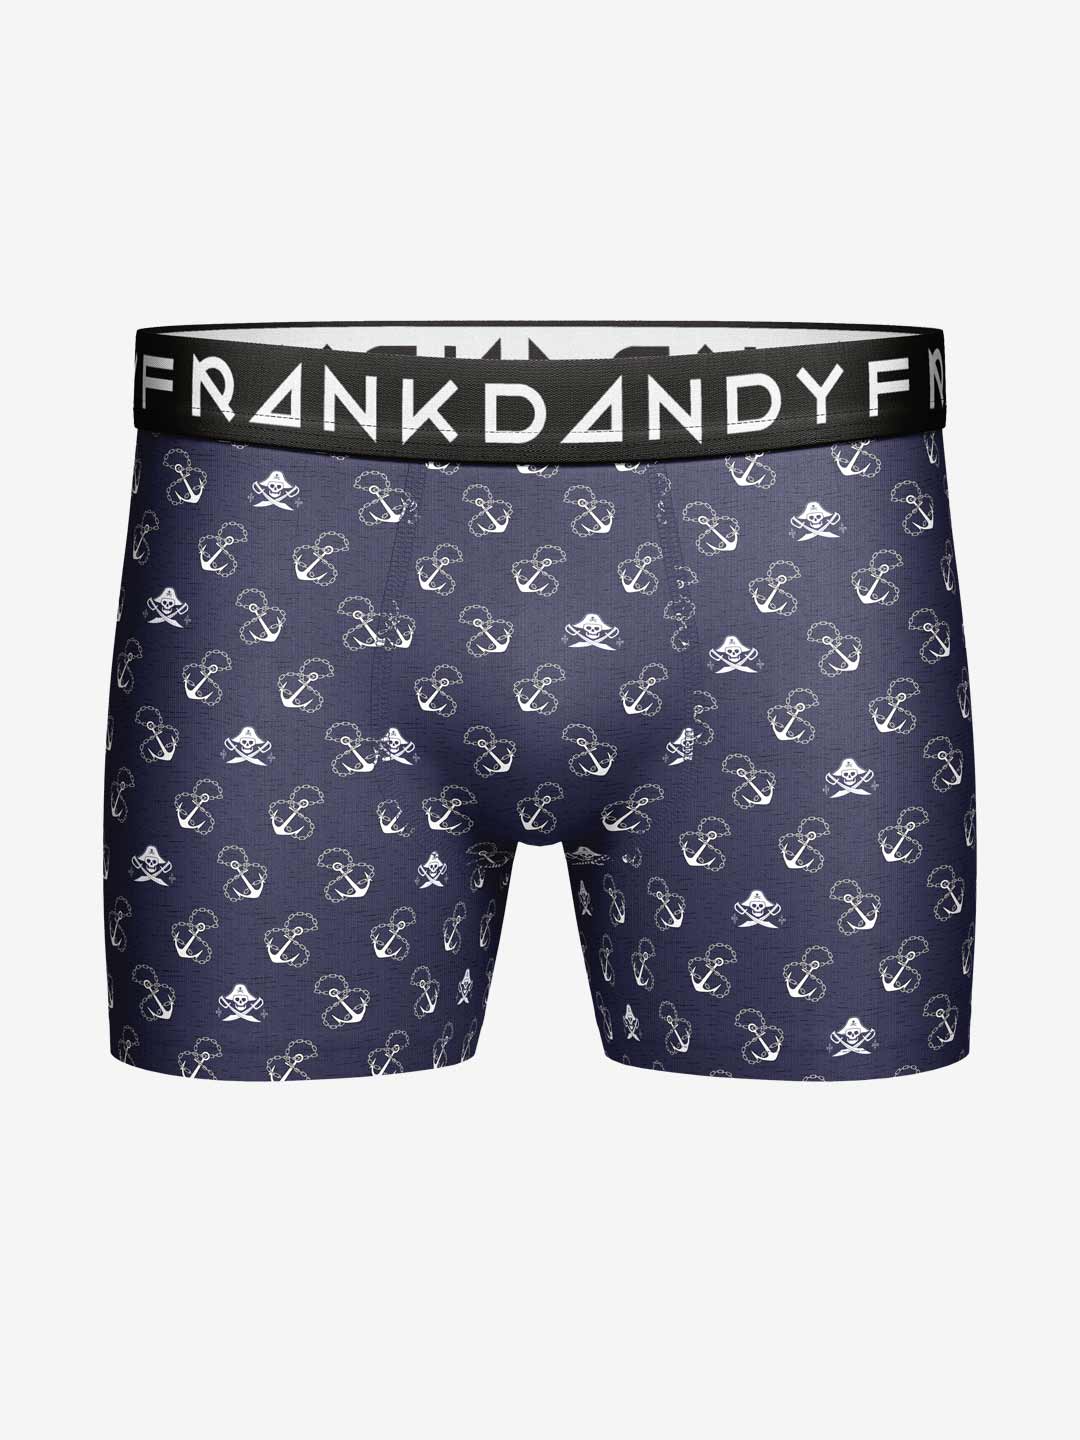 Frank Dandy Seven Seas Boxer